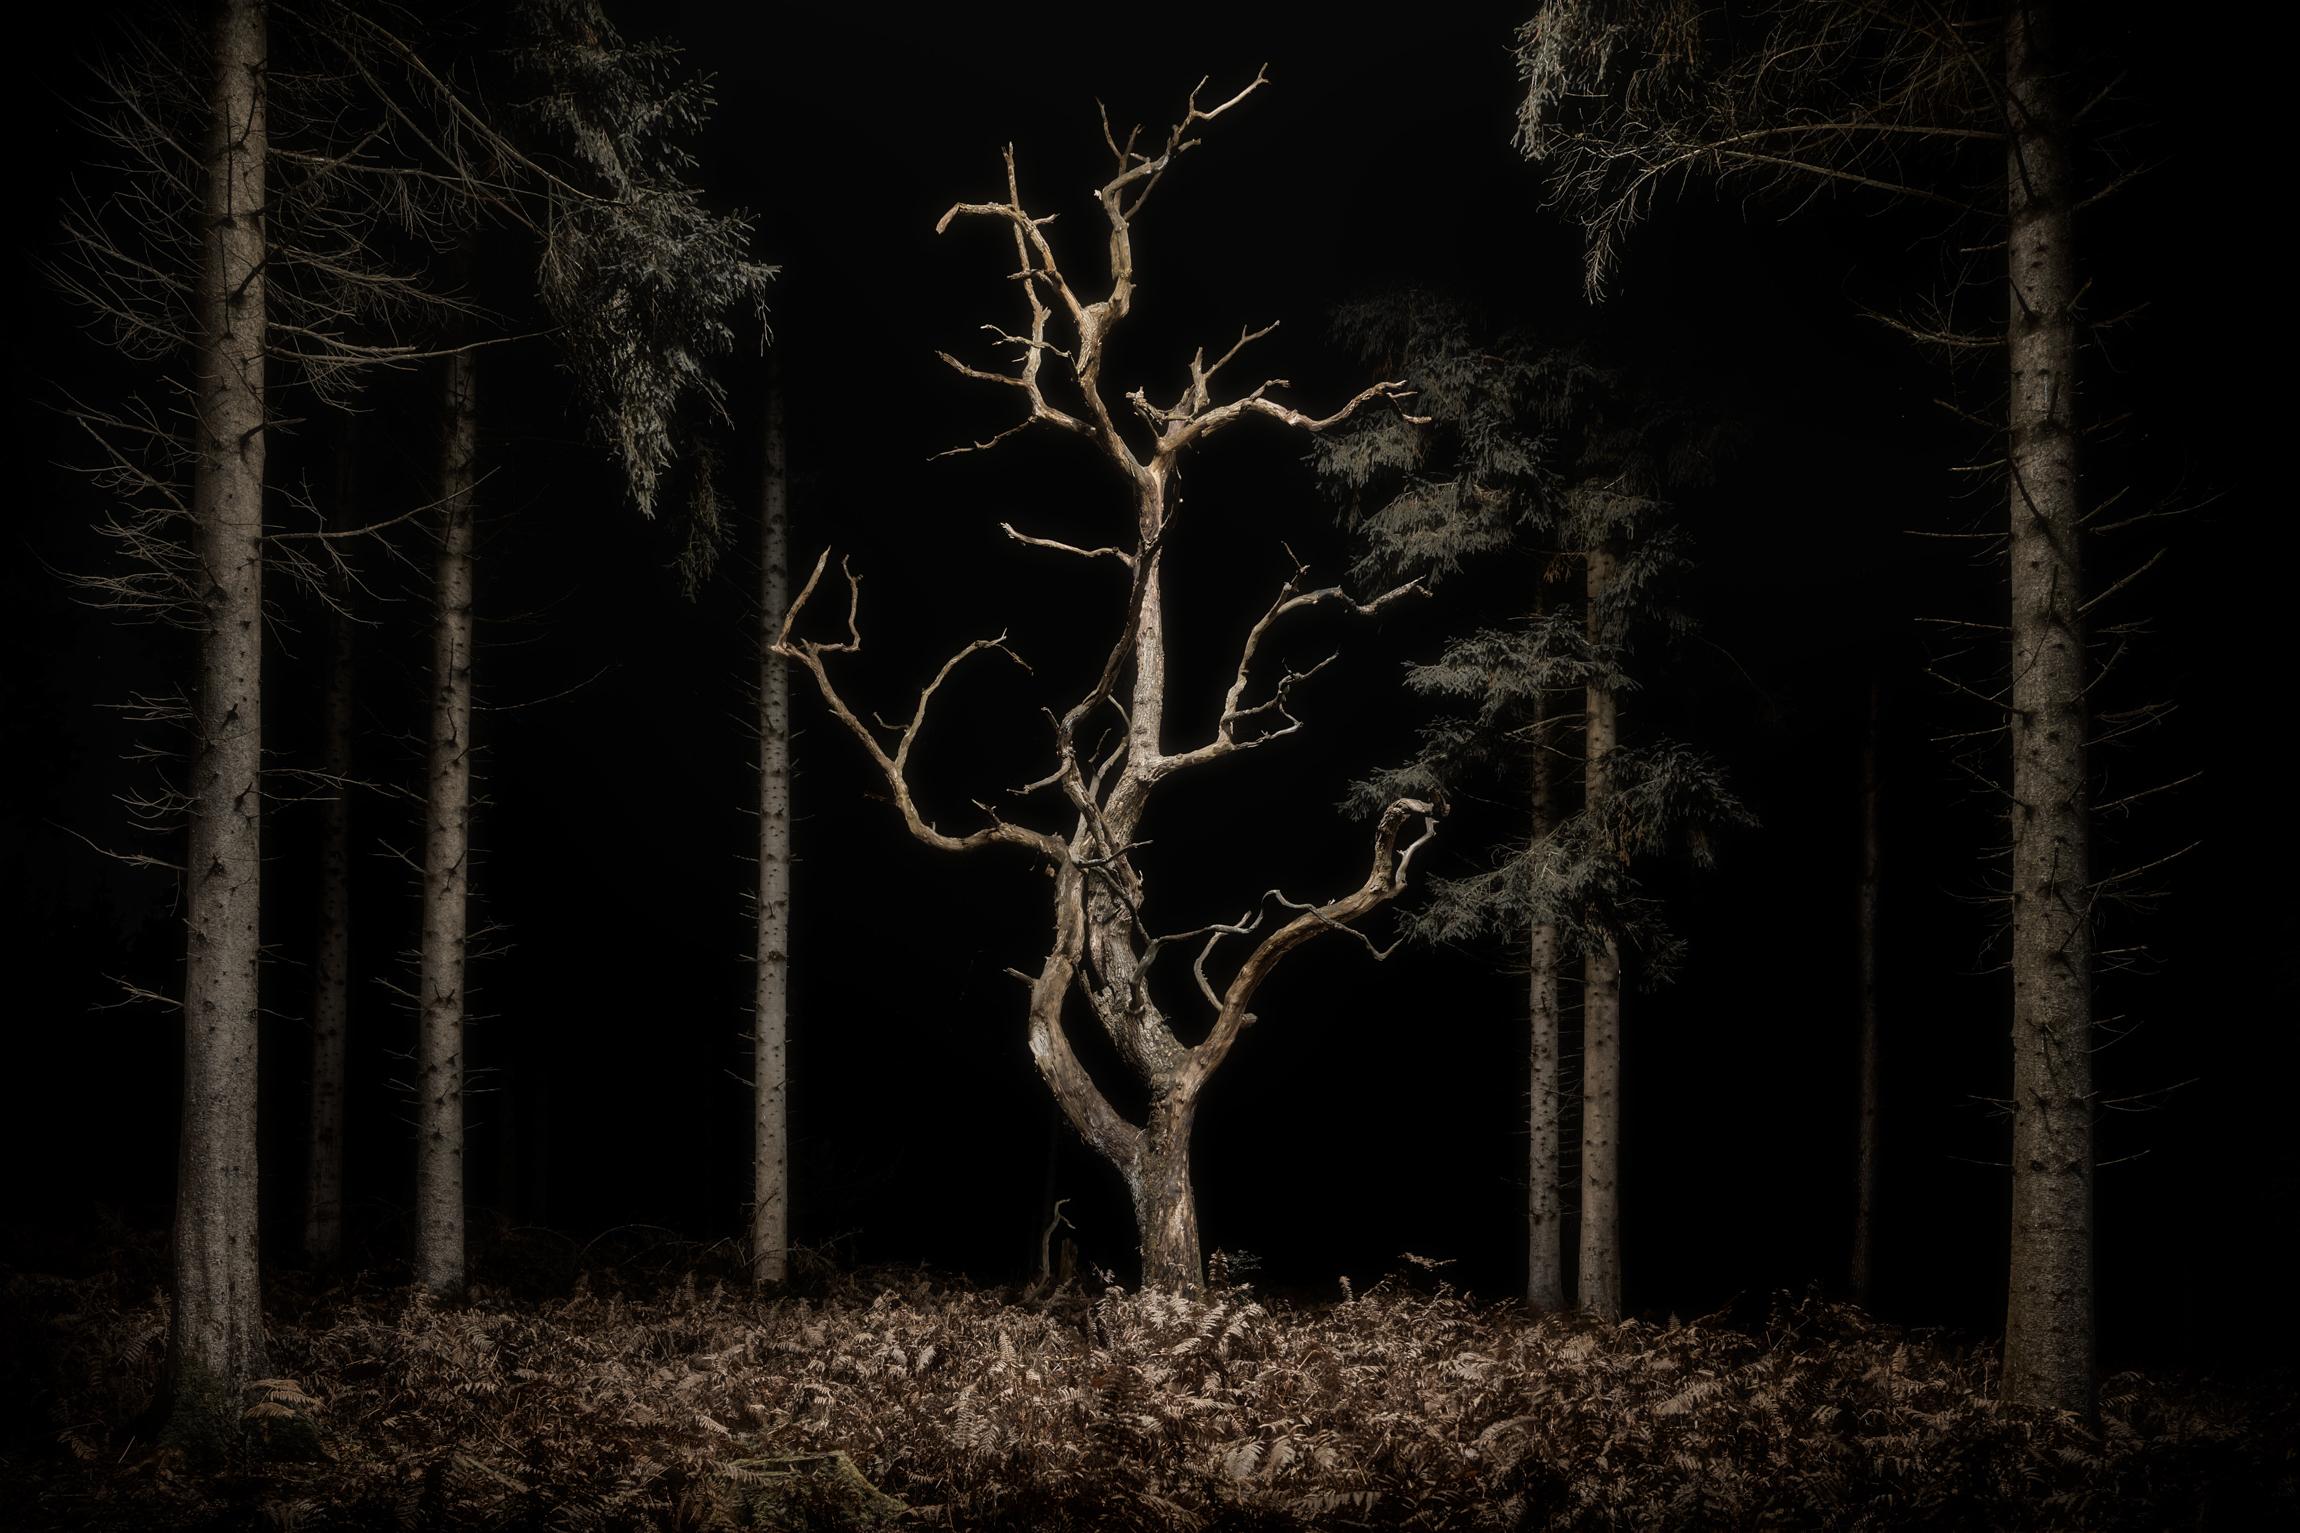 Landscpae 034, Danse Macabre - Un arbre squelettique en chêne